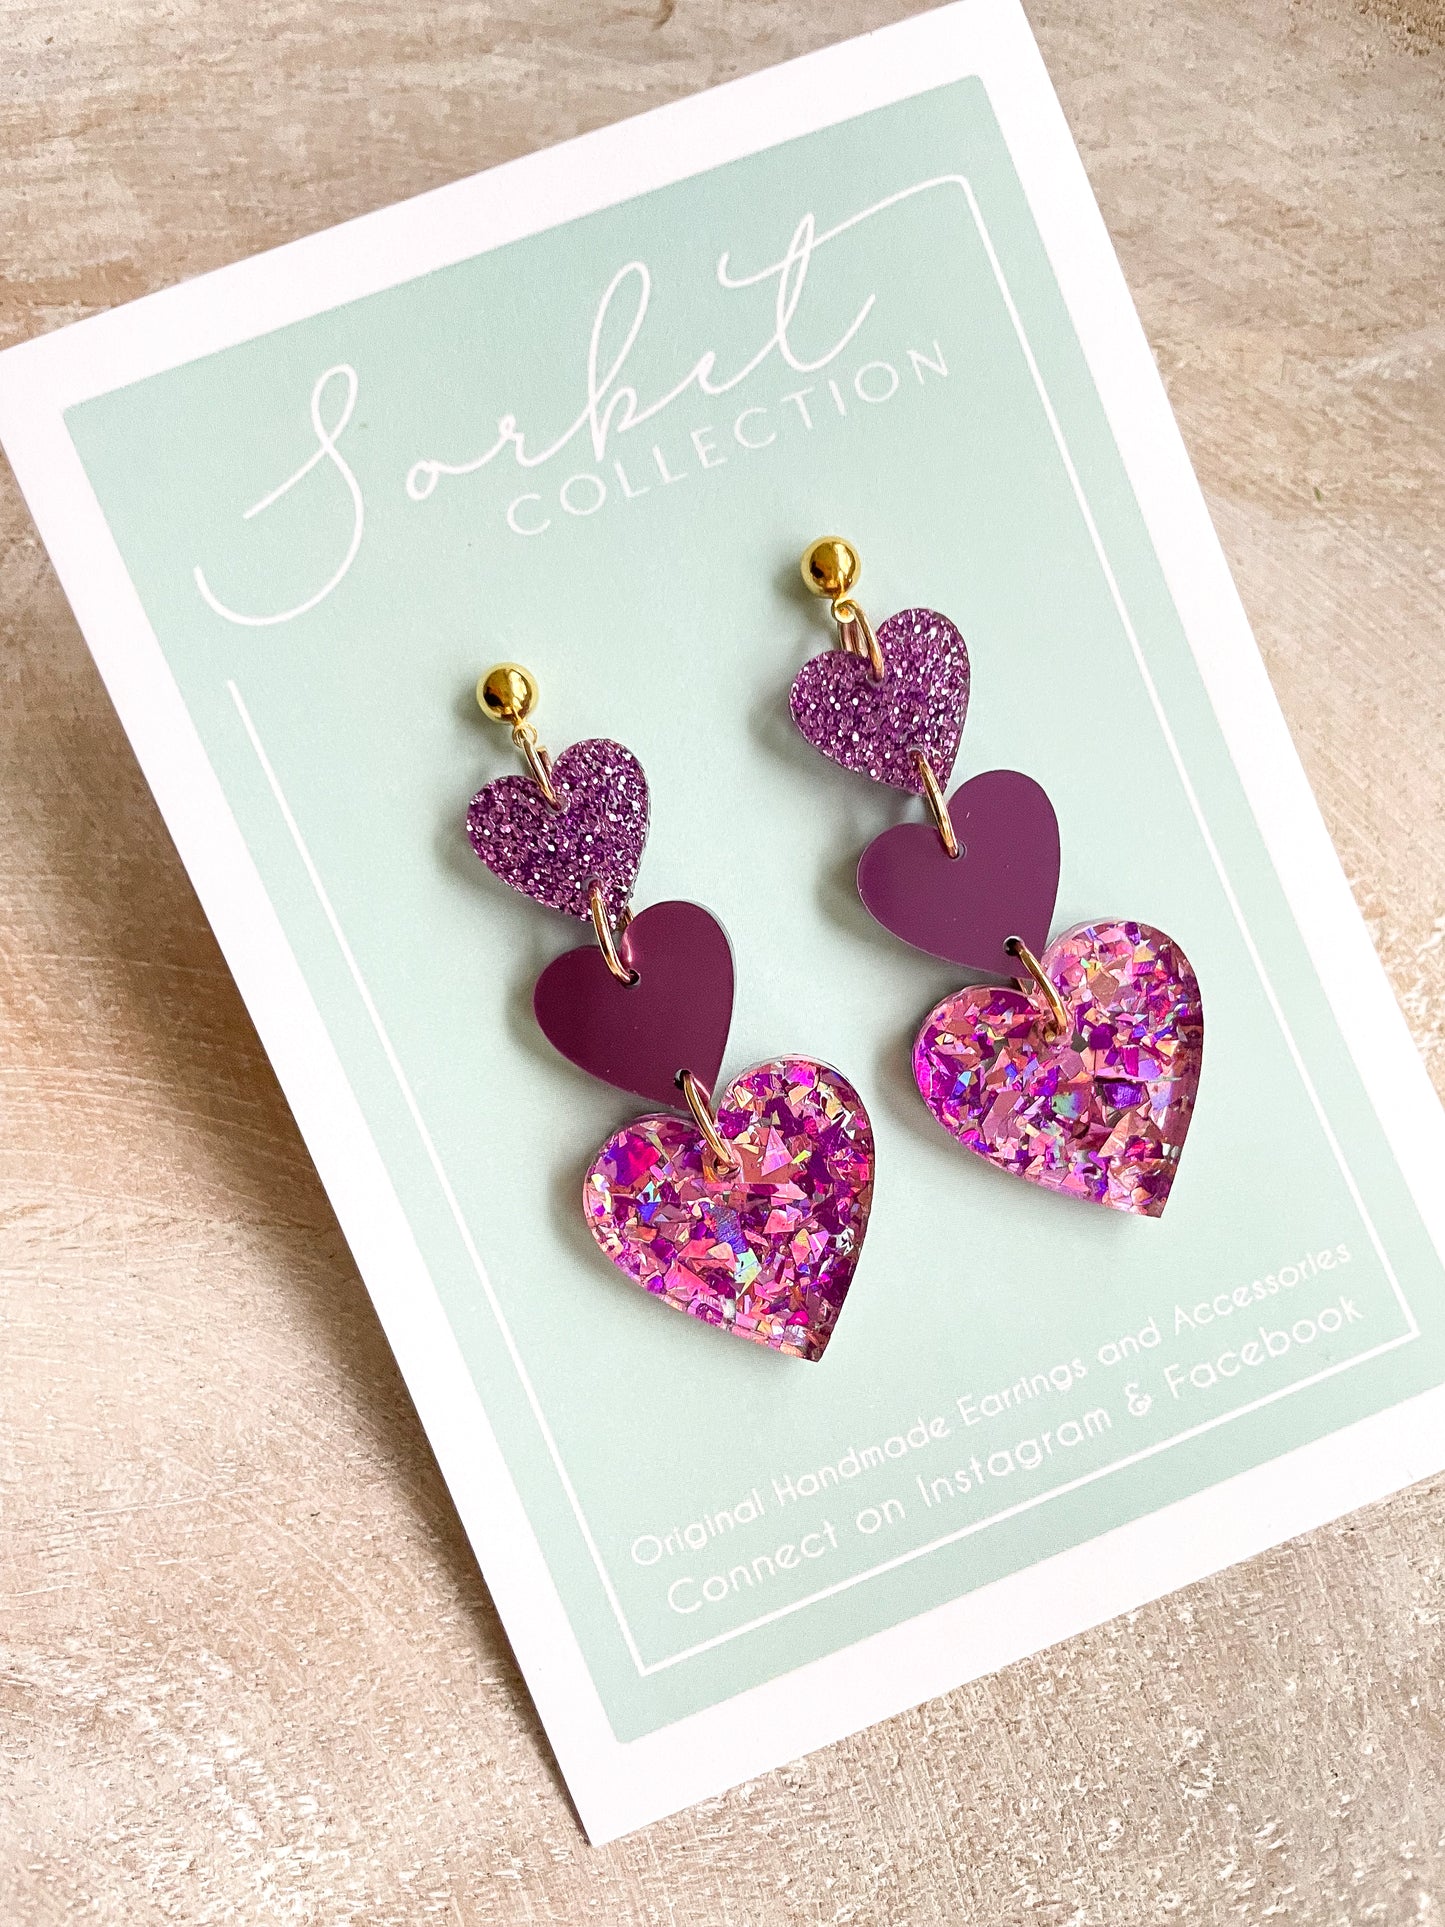 Purple Confetti Hearts